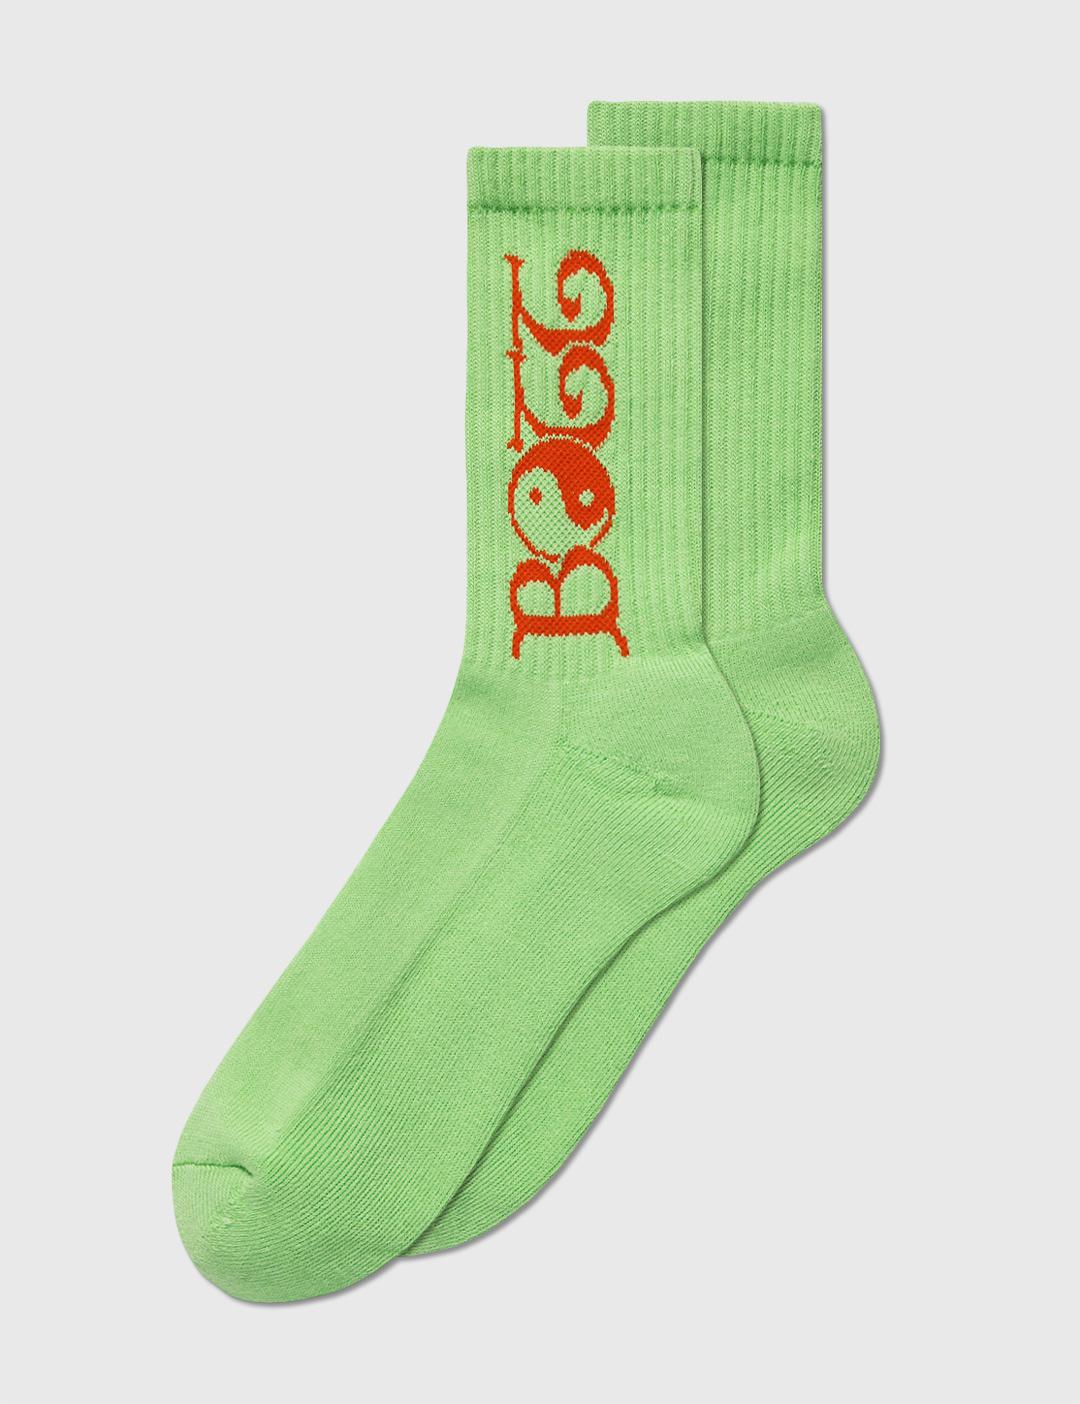 2Y Socks by BO TT